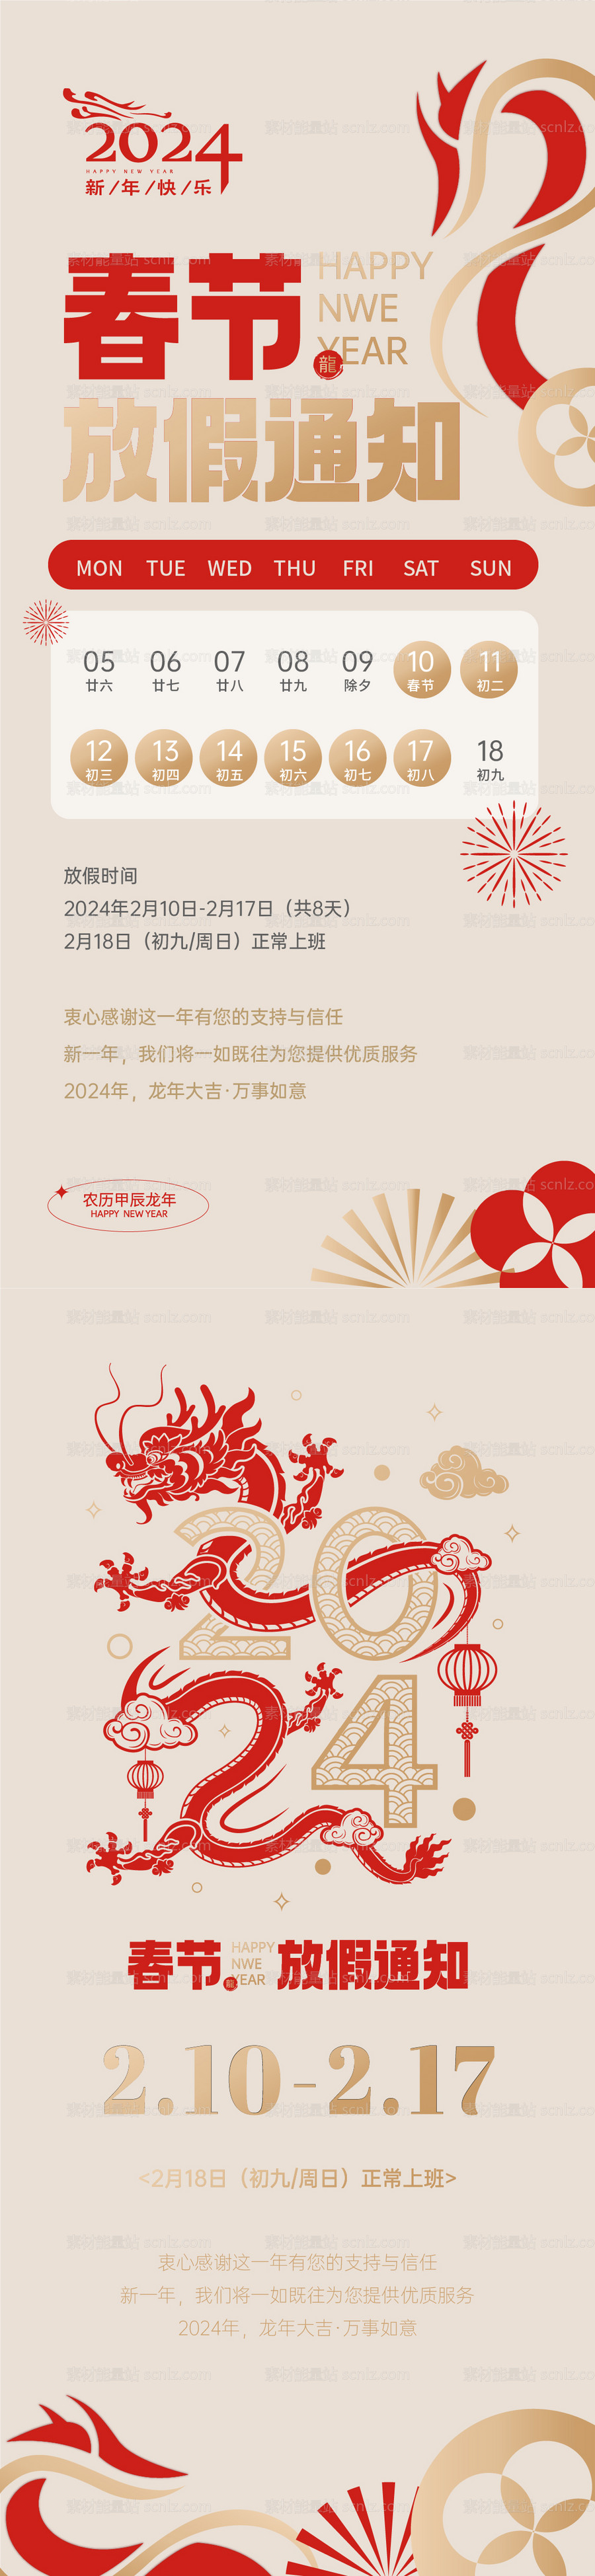 素材能量站-龙年春节放假通知海报